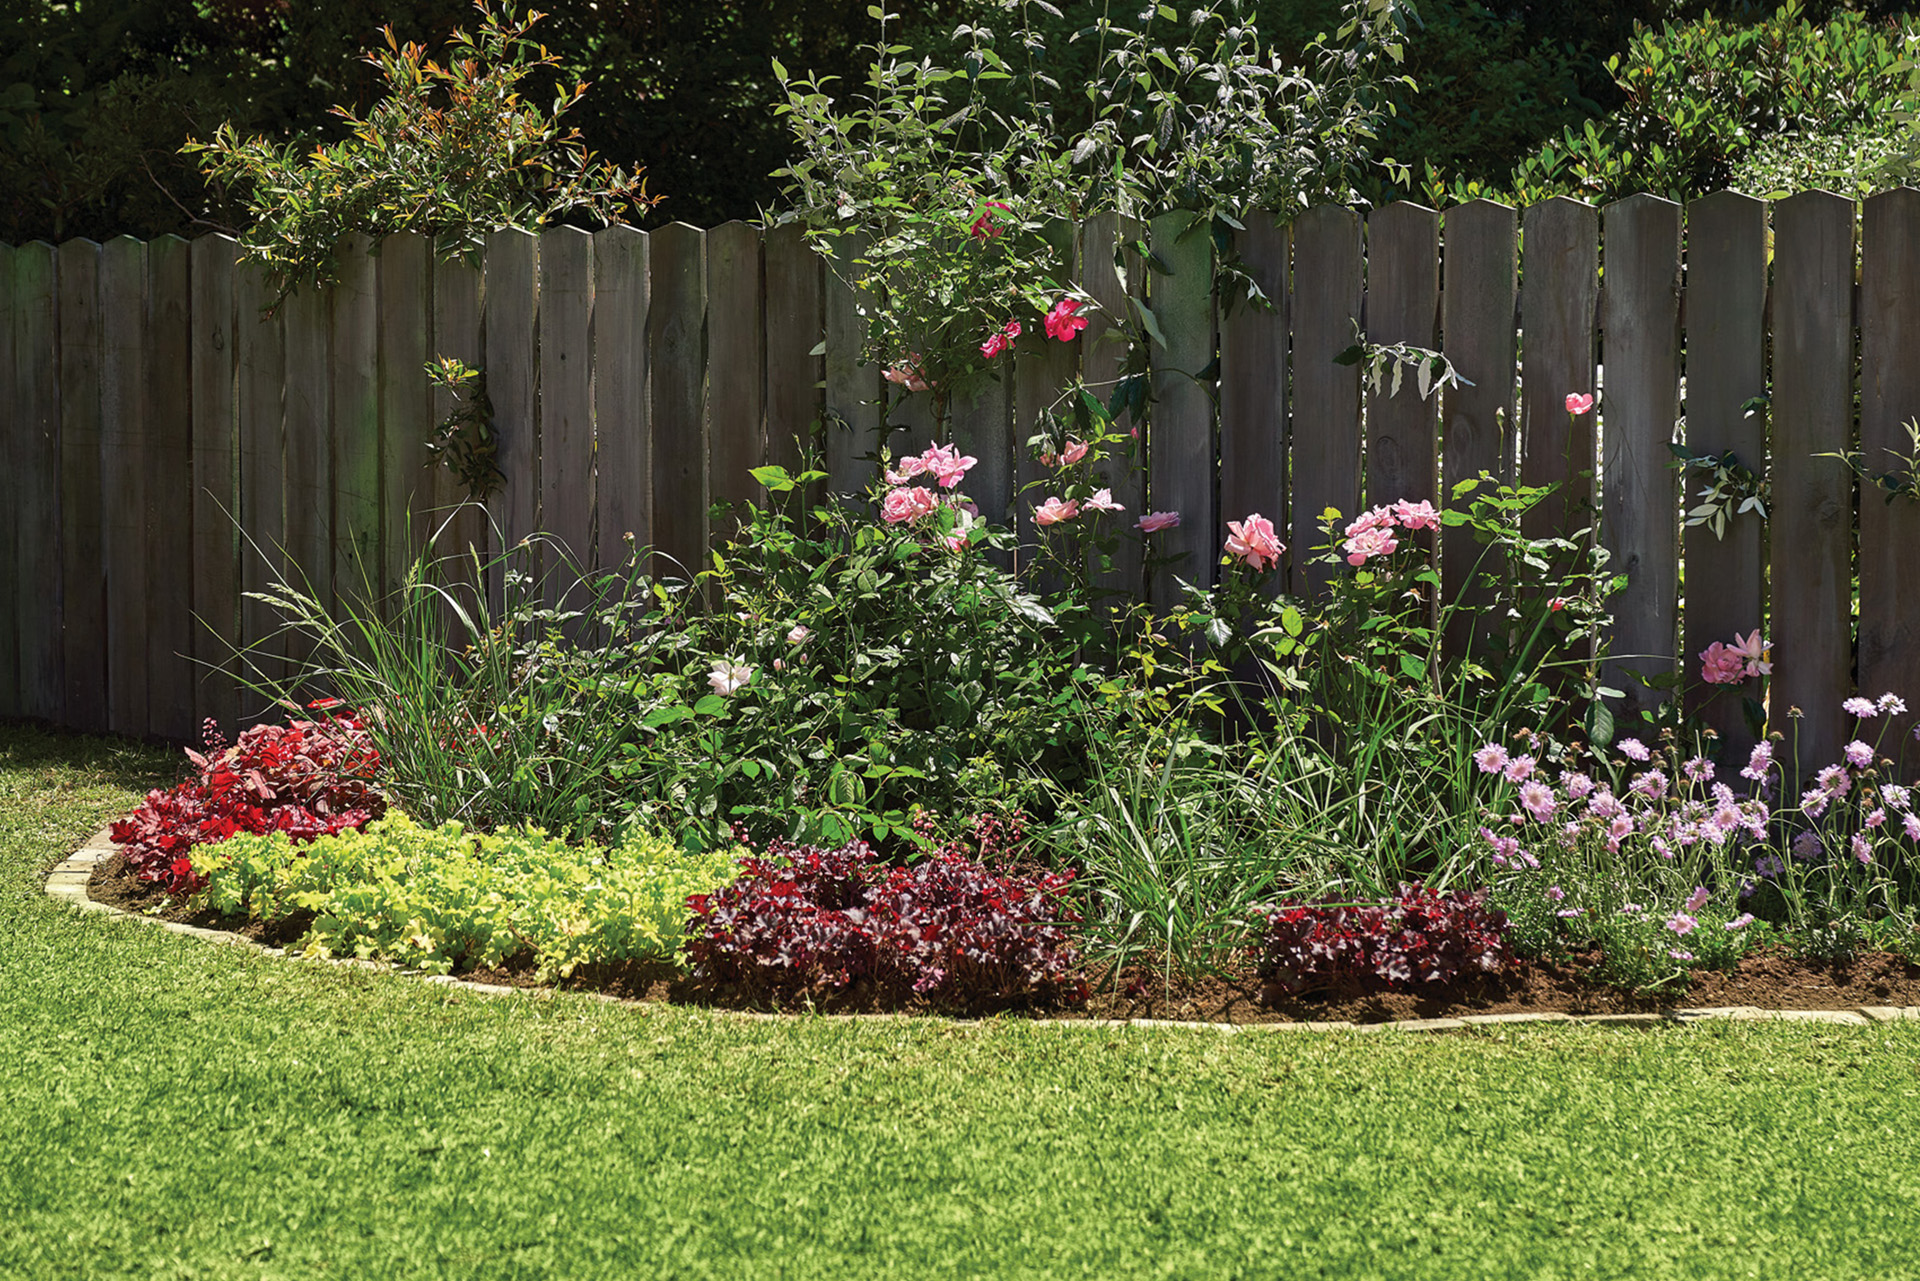 Canteiro delimitado por pequenas gramíneas e rosas na borda de um jardim pequeno, cercado por uma vedação de madeira a meia altura.